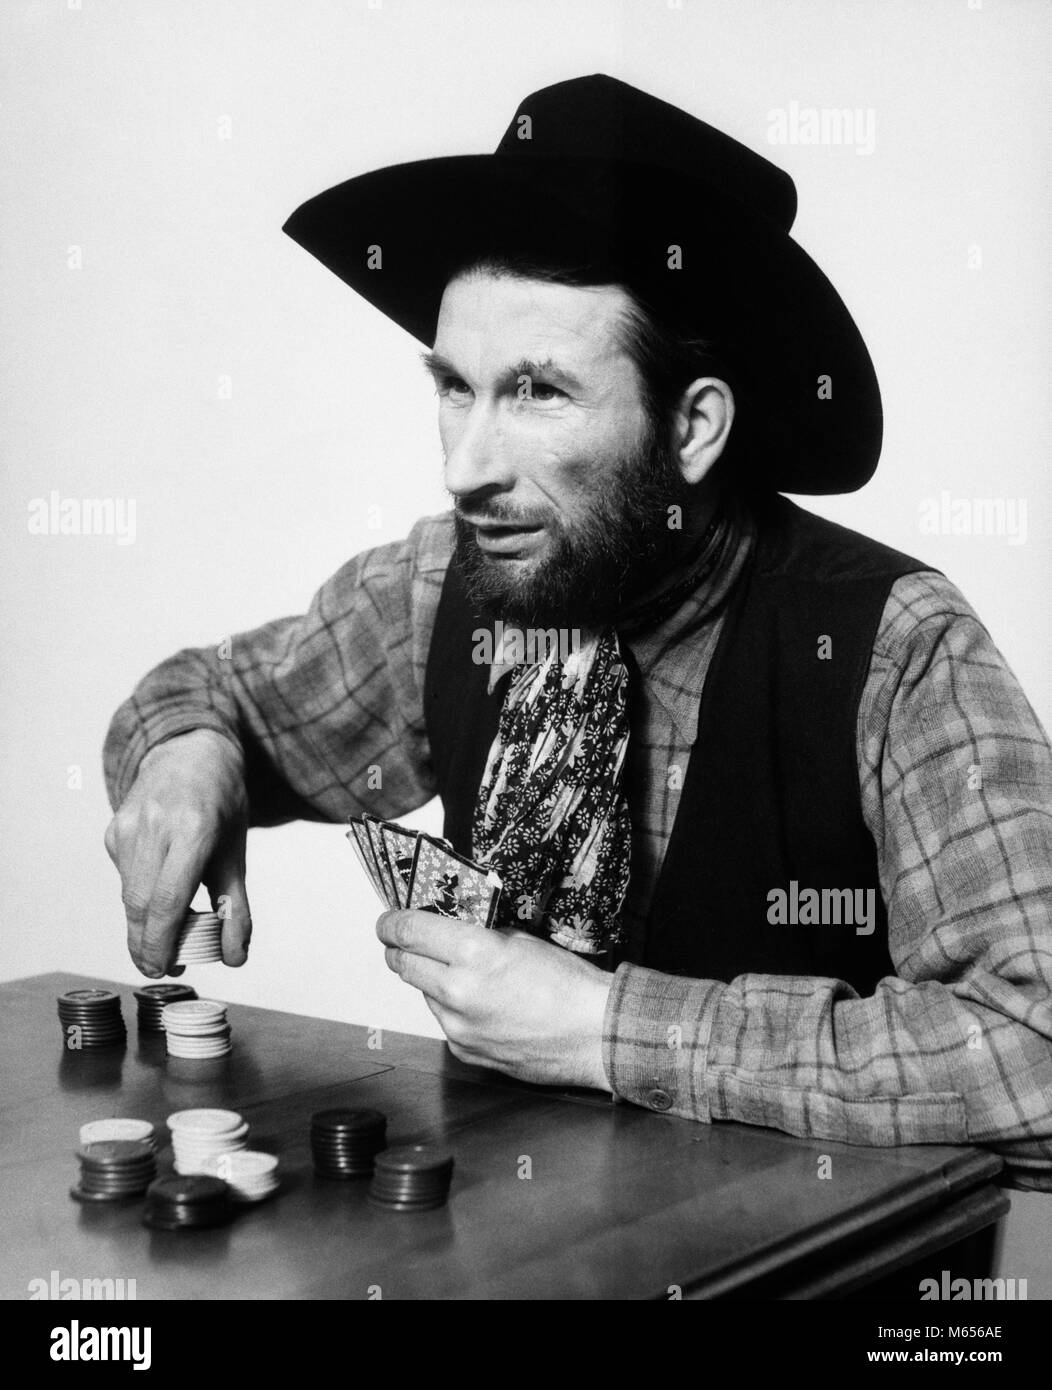 1930er Jahre bärtiger Mann Cowboy spielen Wetten Wetten poker chips - c 988 HAR 001 HARS WAHL AUFREGUNG LUCKY FREIZEIT GELEGENHEIT SPIELEN MÄNNER B&W WETTE WETTEN SCHWARZ UND WEISS KAUKASISCHEN ETHNIE CHANCE COWBOYHUT SPIELER SPIEL DES ZUFALLS ALTMODISCHE PERSONEN POKE Stockfoto